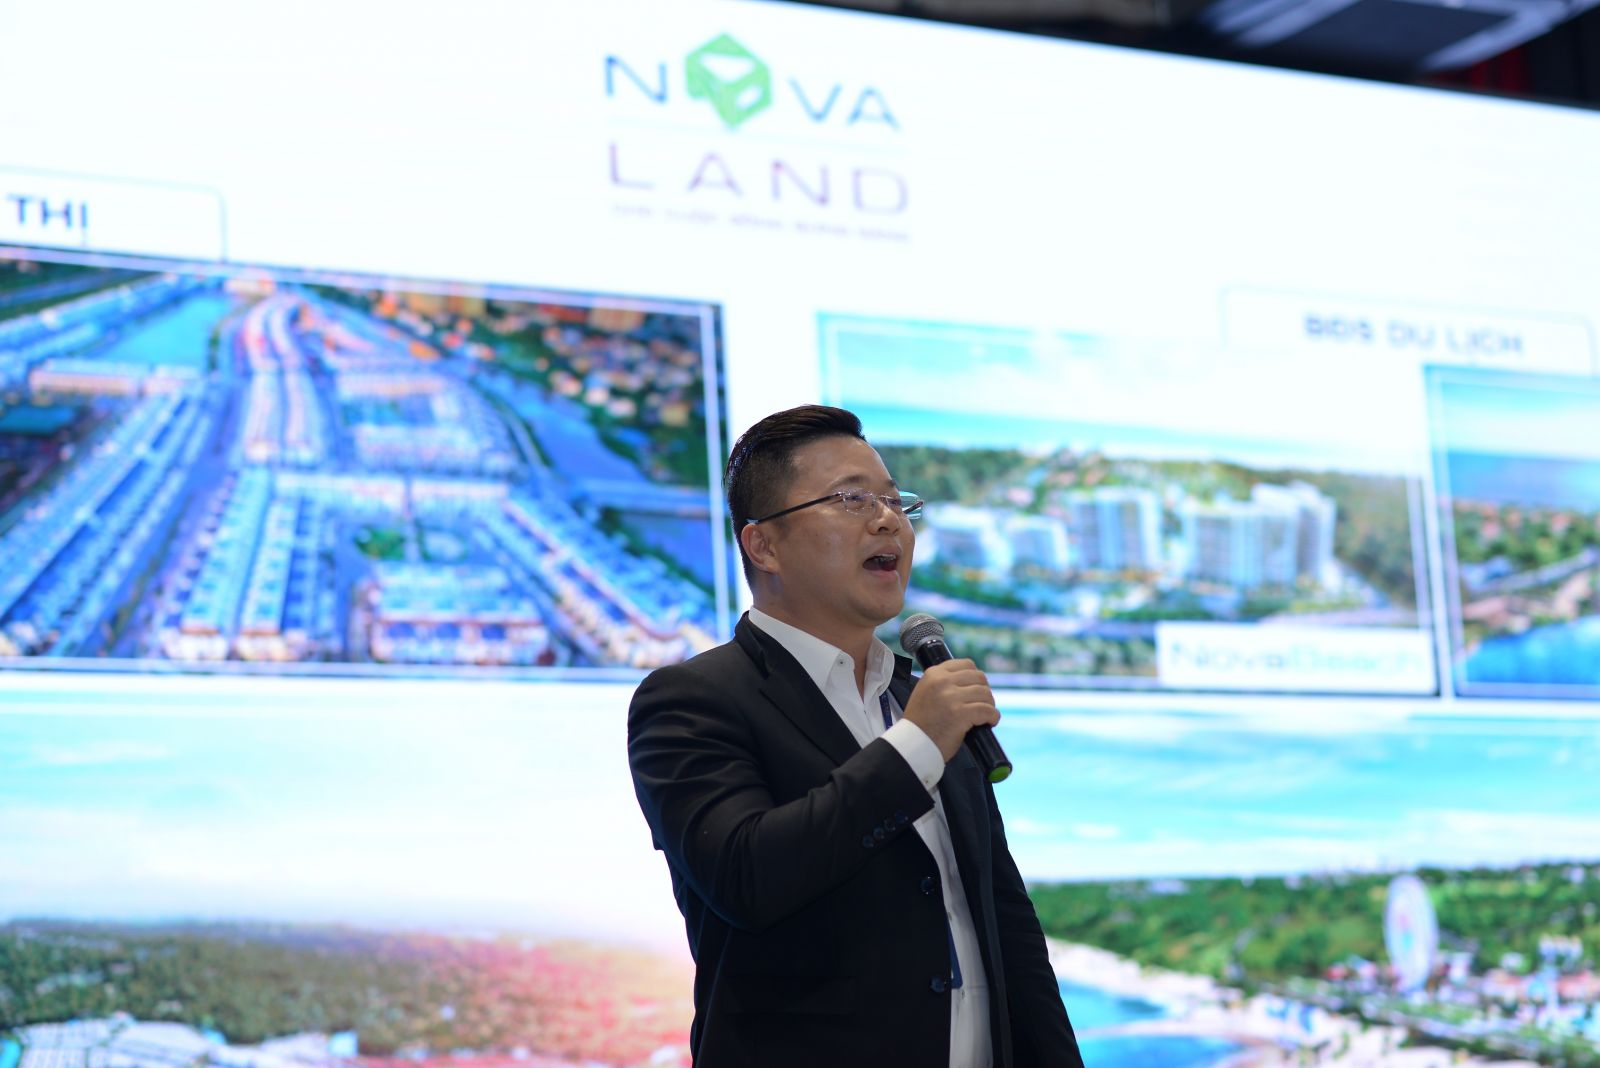 Ông Lâm Đại Dương – Giám đốc Kinh doanh Tập đoàn Novaland đánh giá cao triển vọng của nghề Kinh doanh Bất động sản.